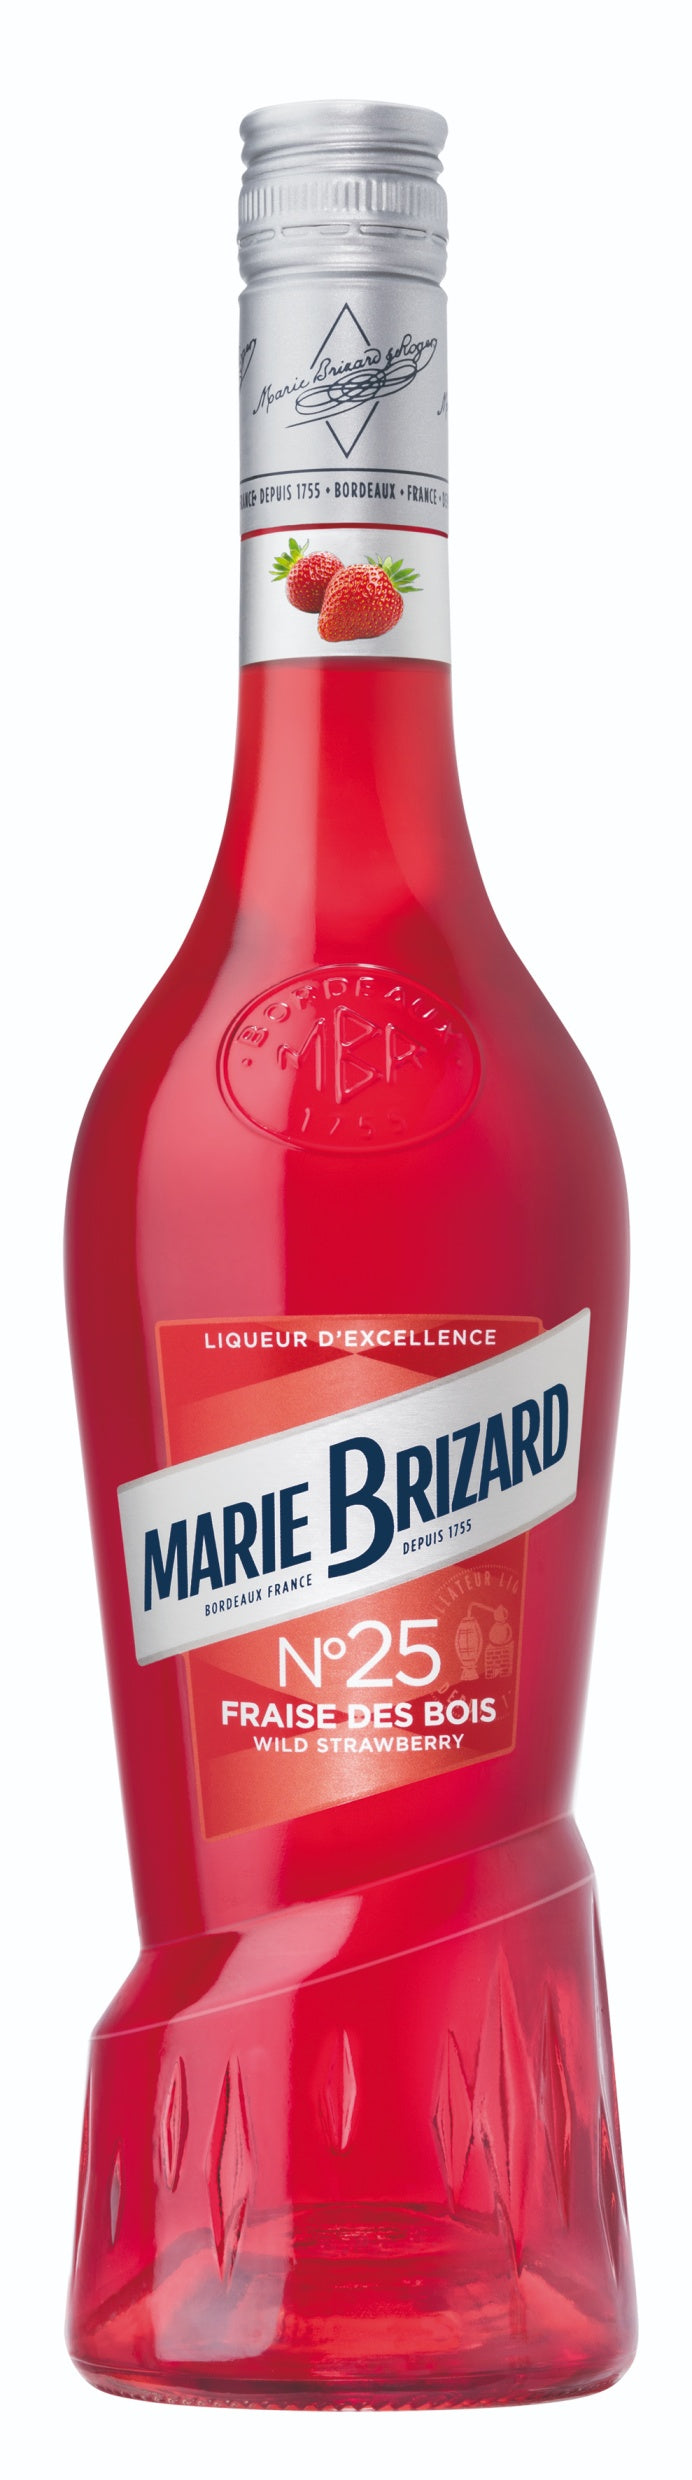 MARIE BRIZARD LIQUEUR FRAISE DES BOIS 70CL